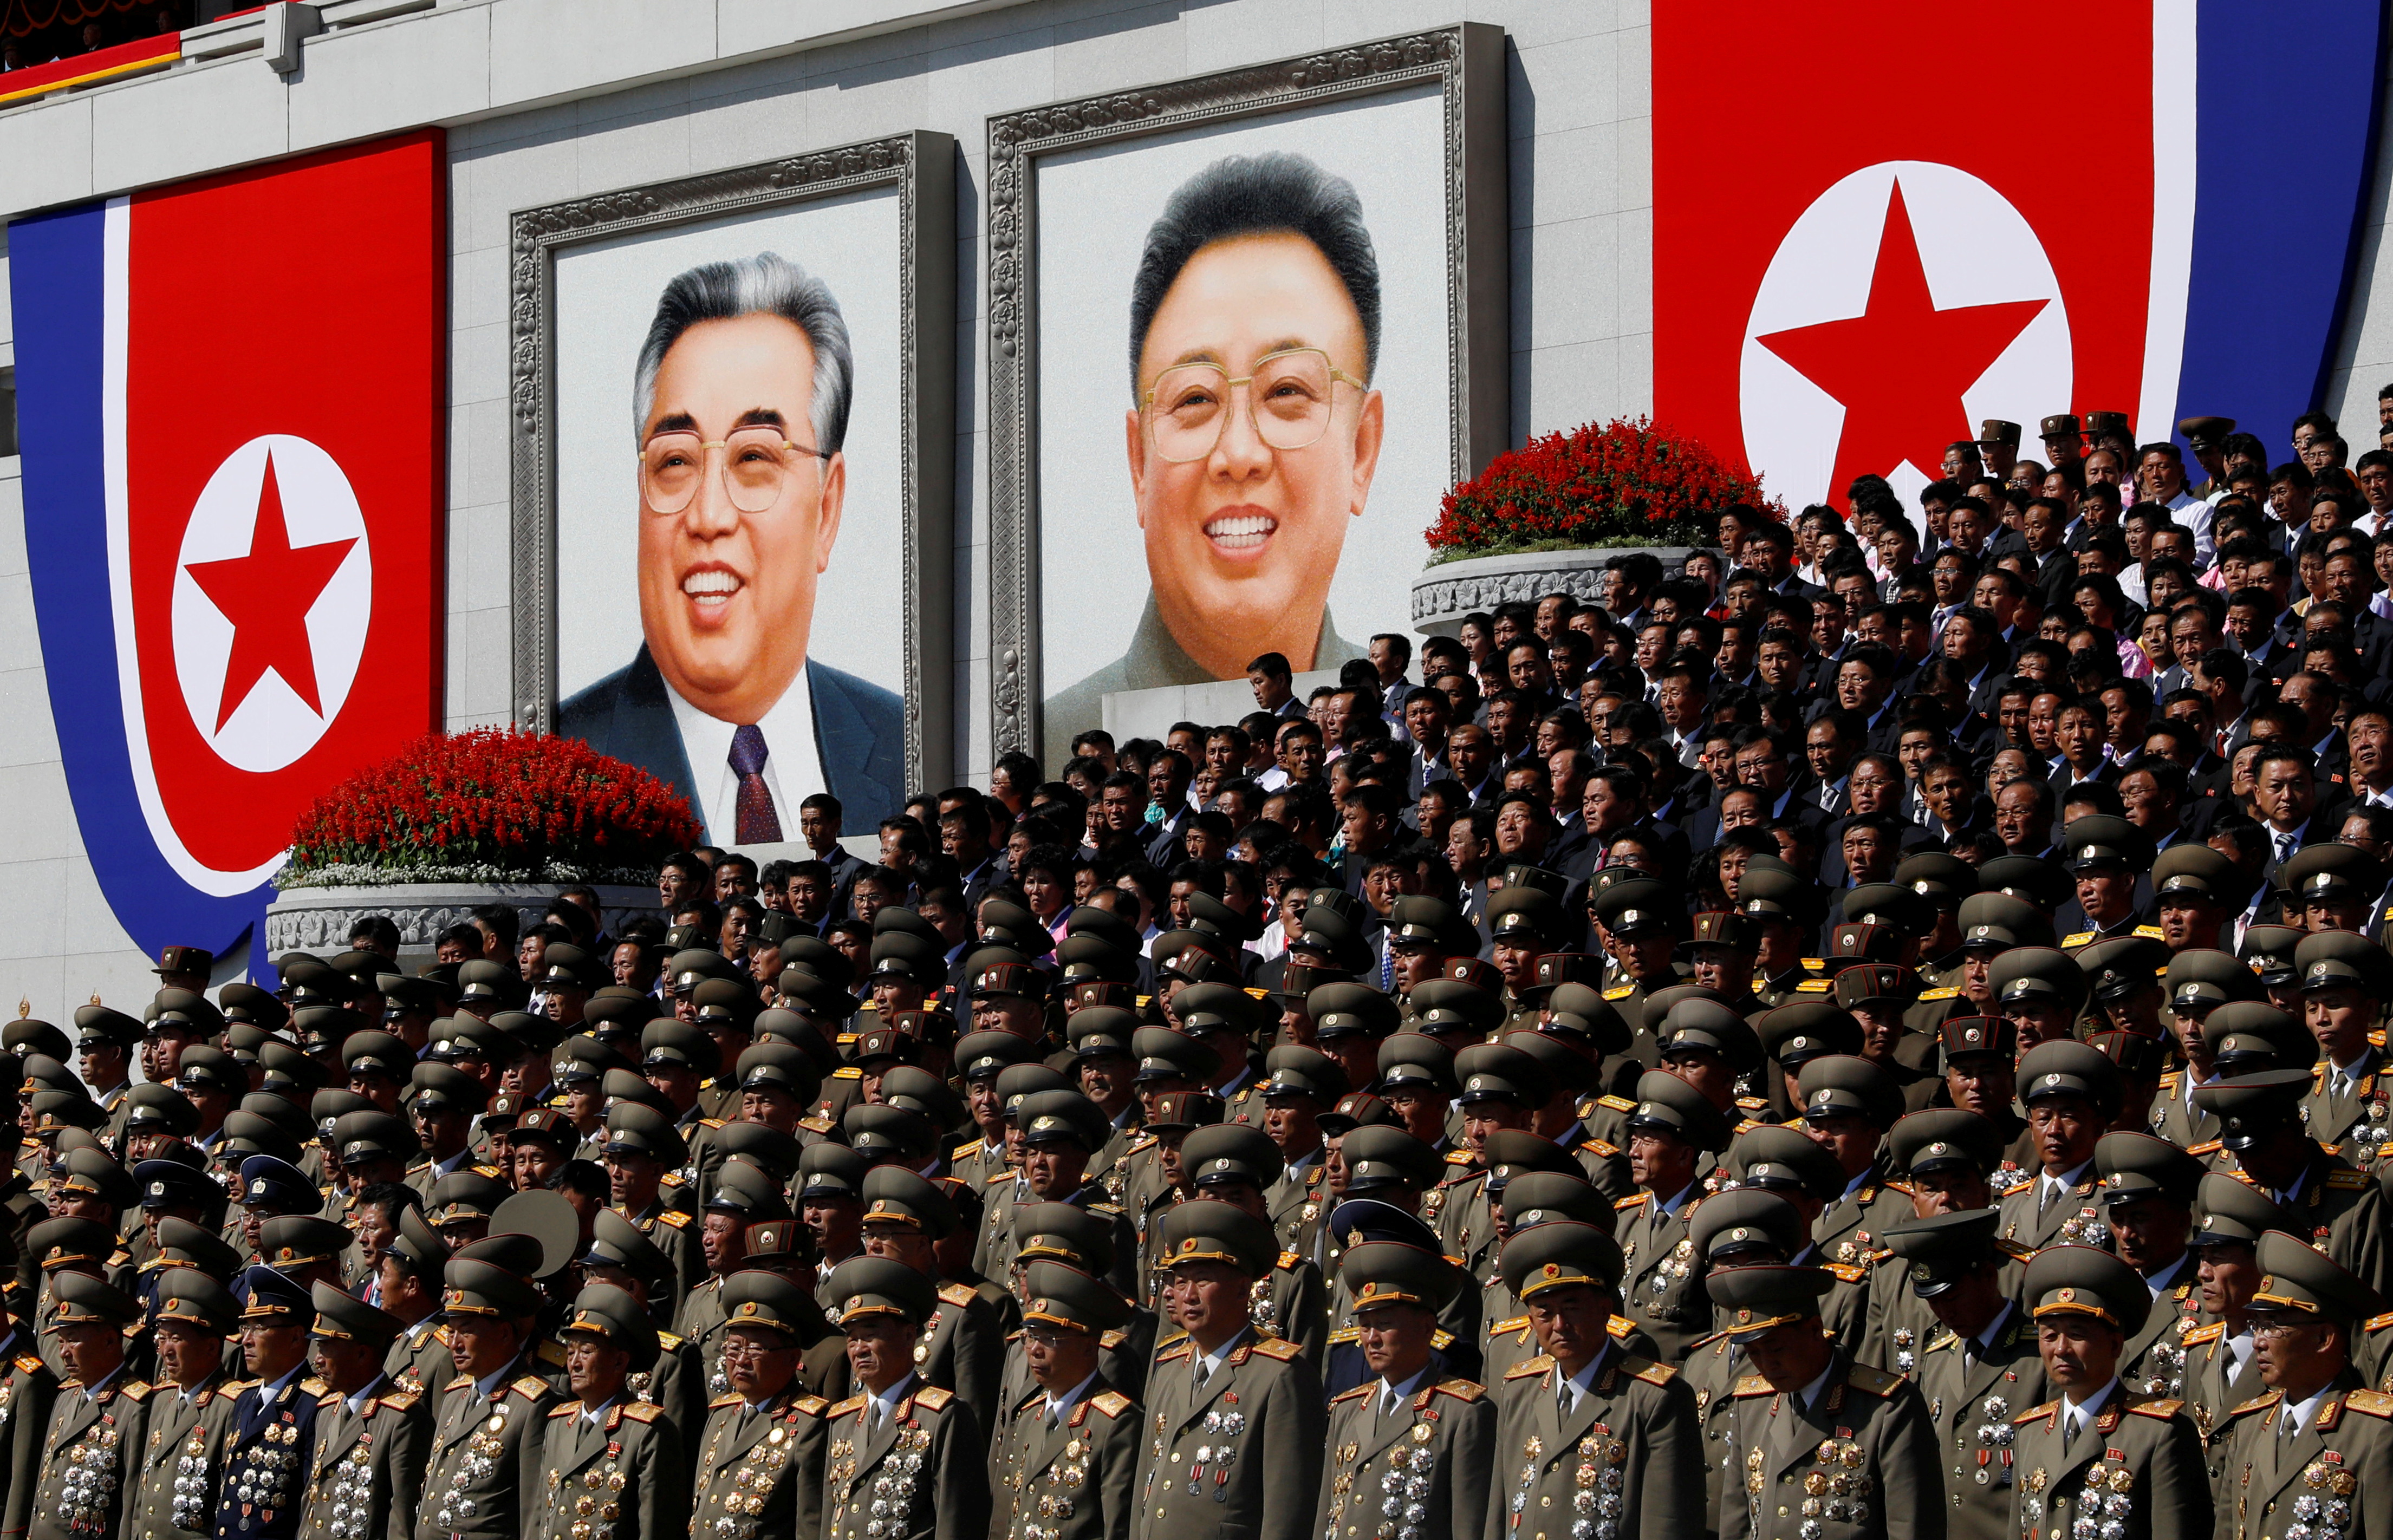 Kim Jong Un's crackdowns leave North Korea defectors with little hope |  Reuters